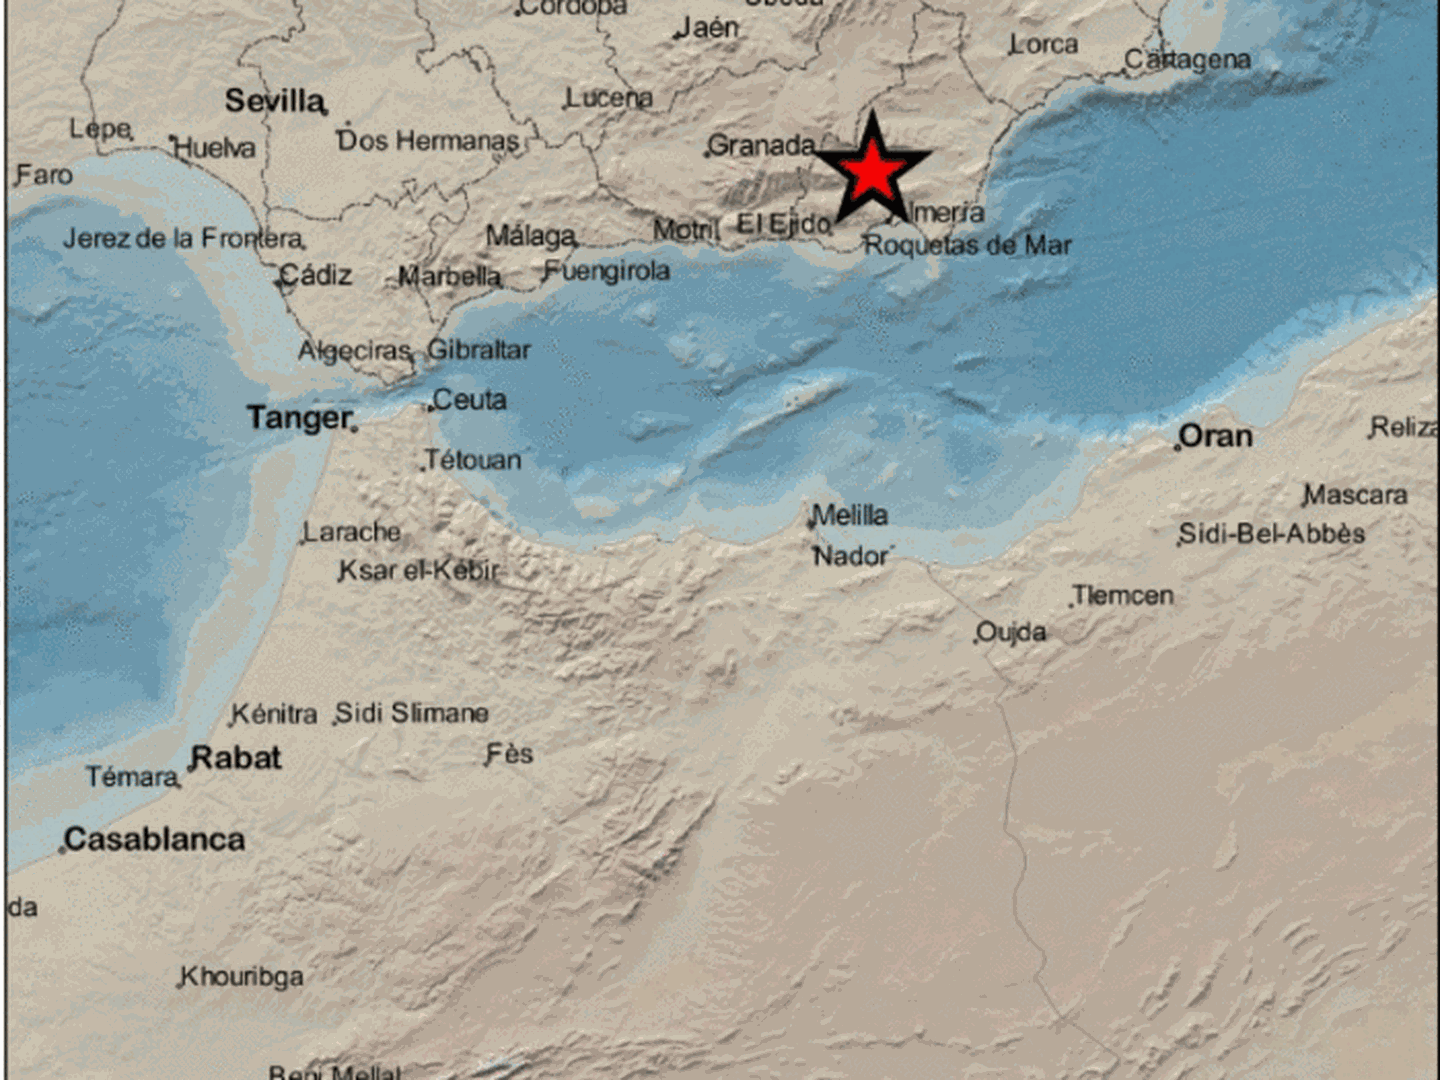 Epicentro del terremoto en las proximidades de Santa Cruz de Marchena. (IGN)